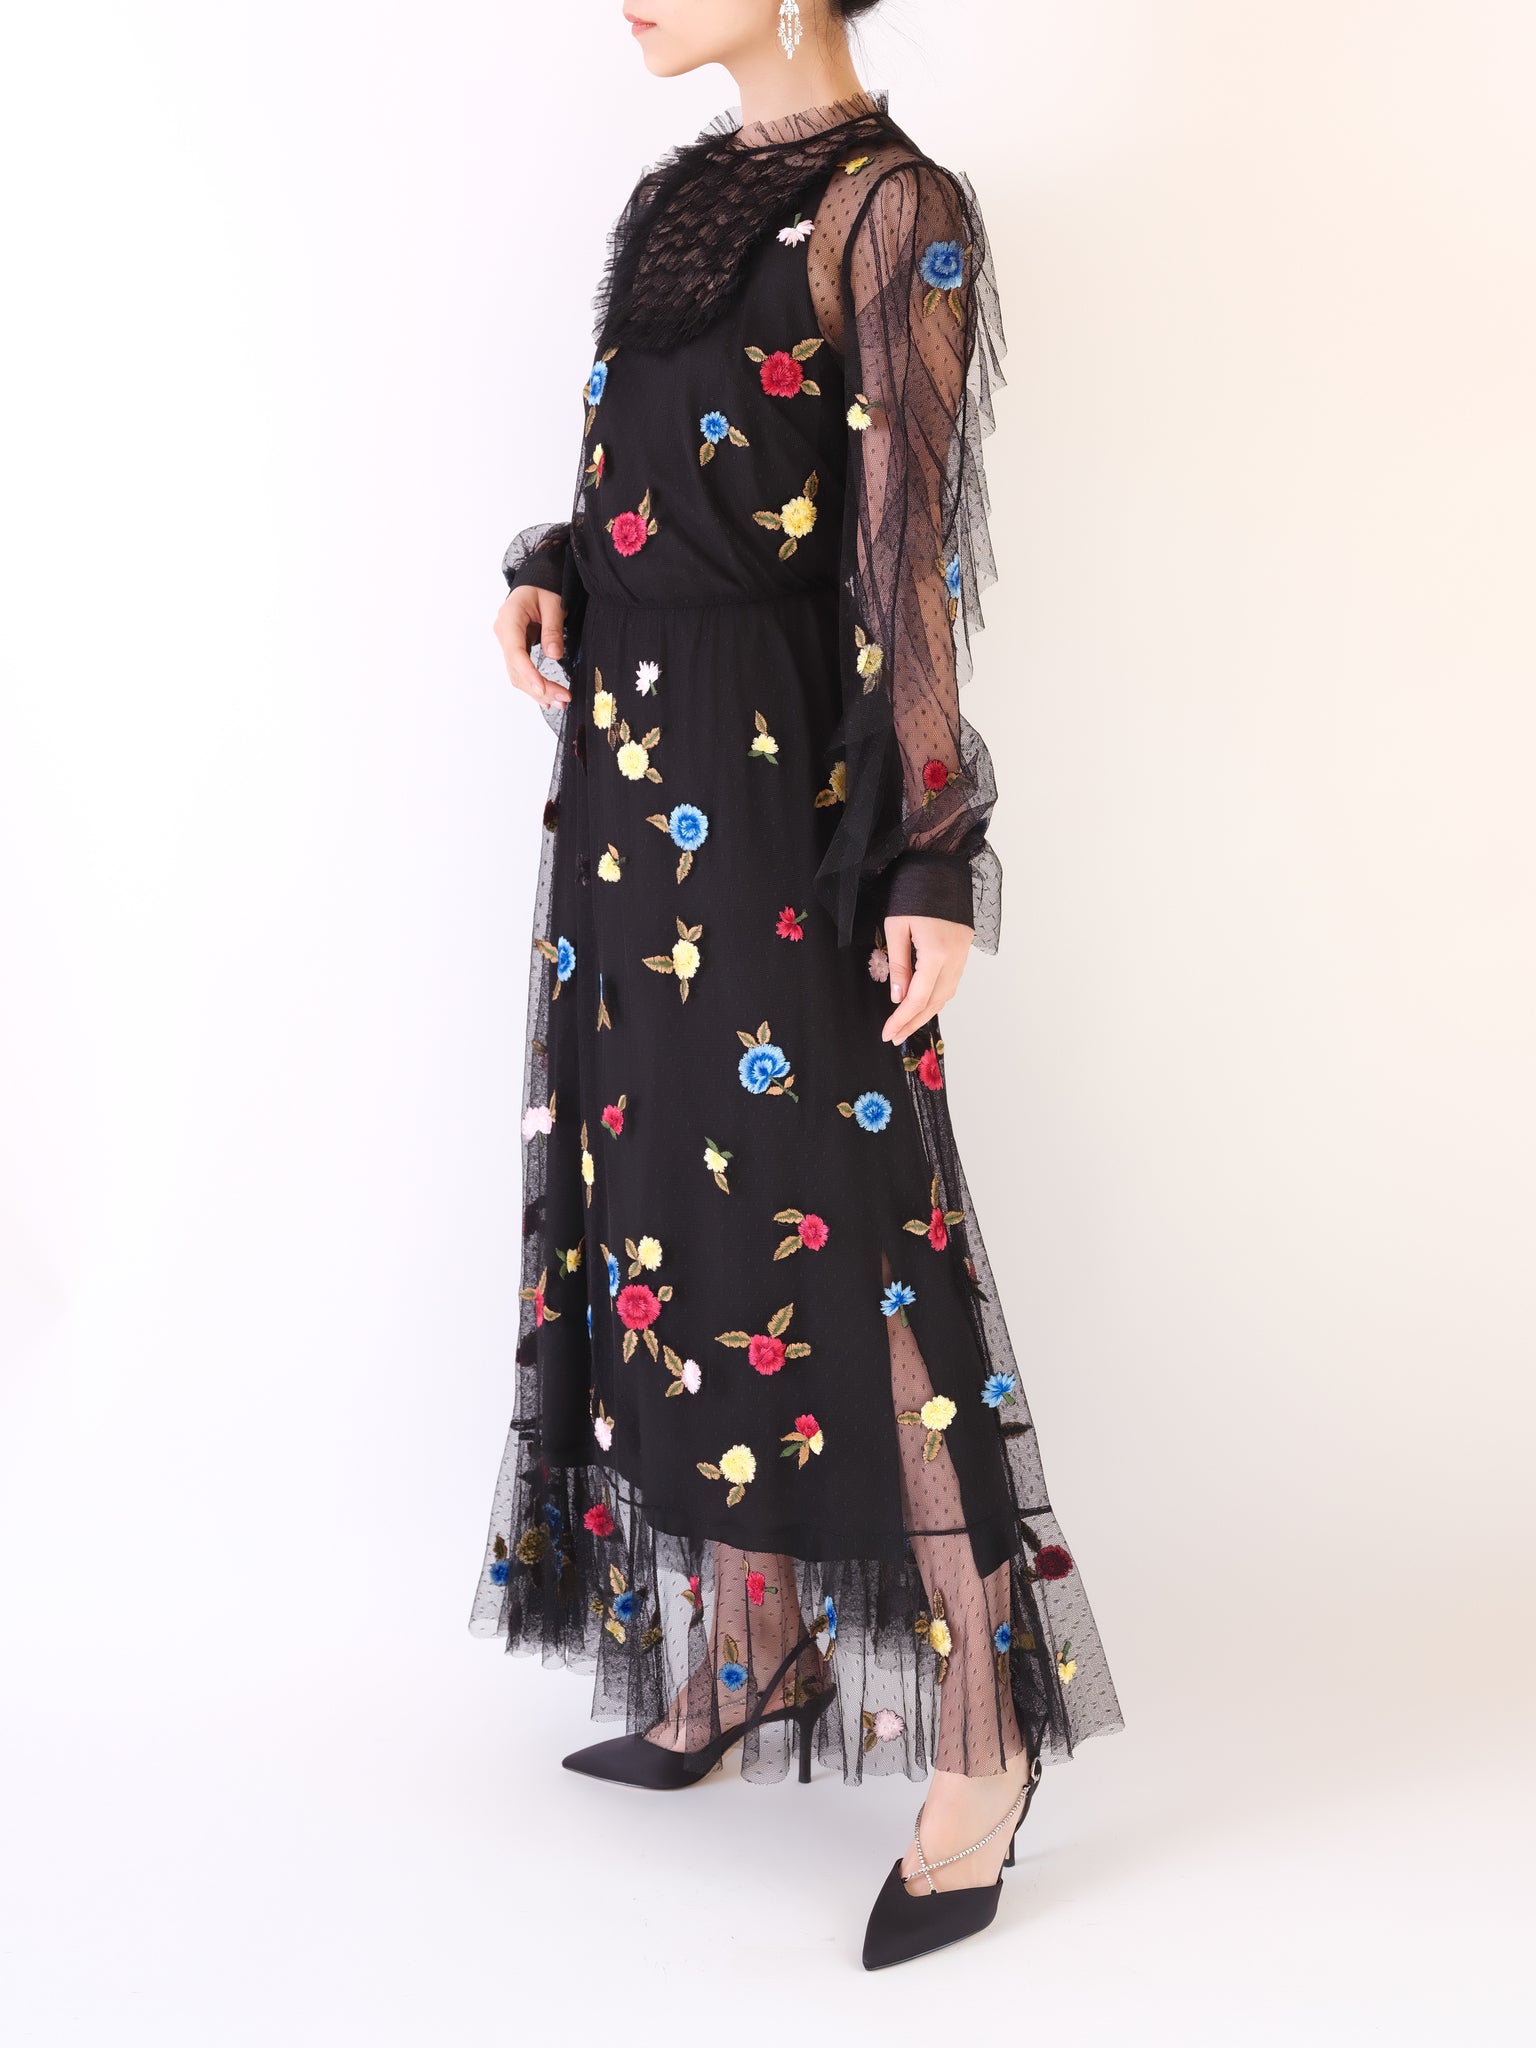 総レース 草花刺繍 フリル装飾ドレス